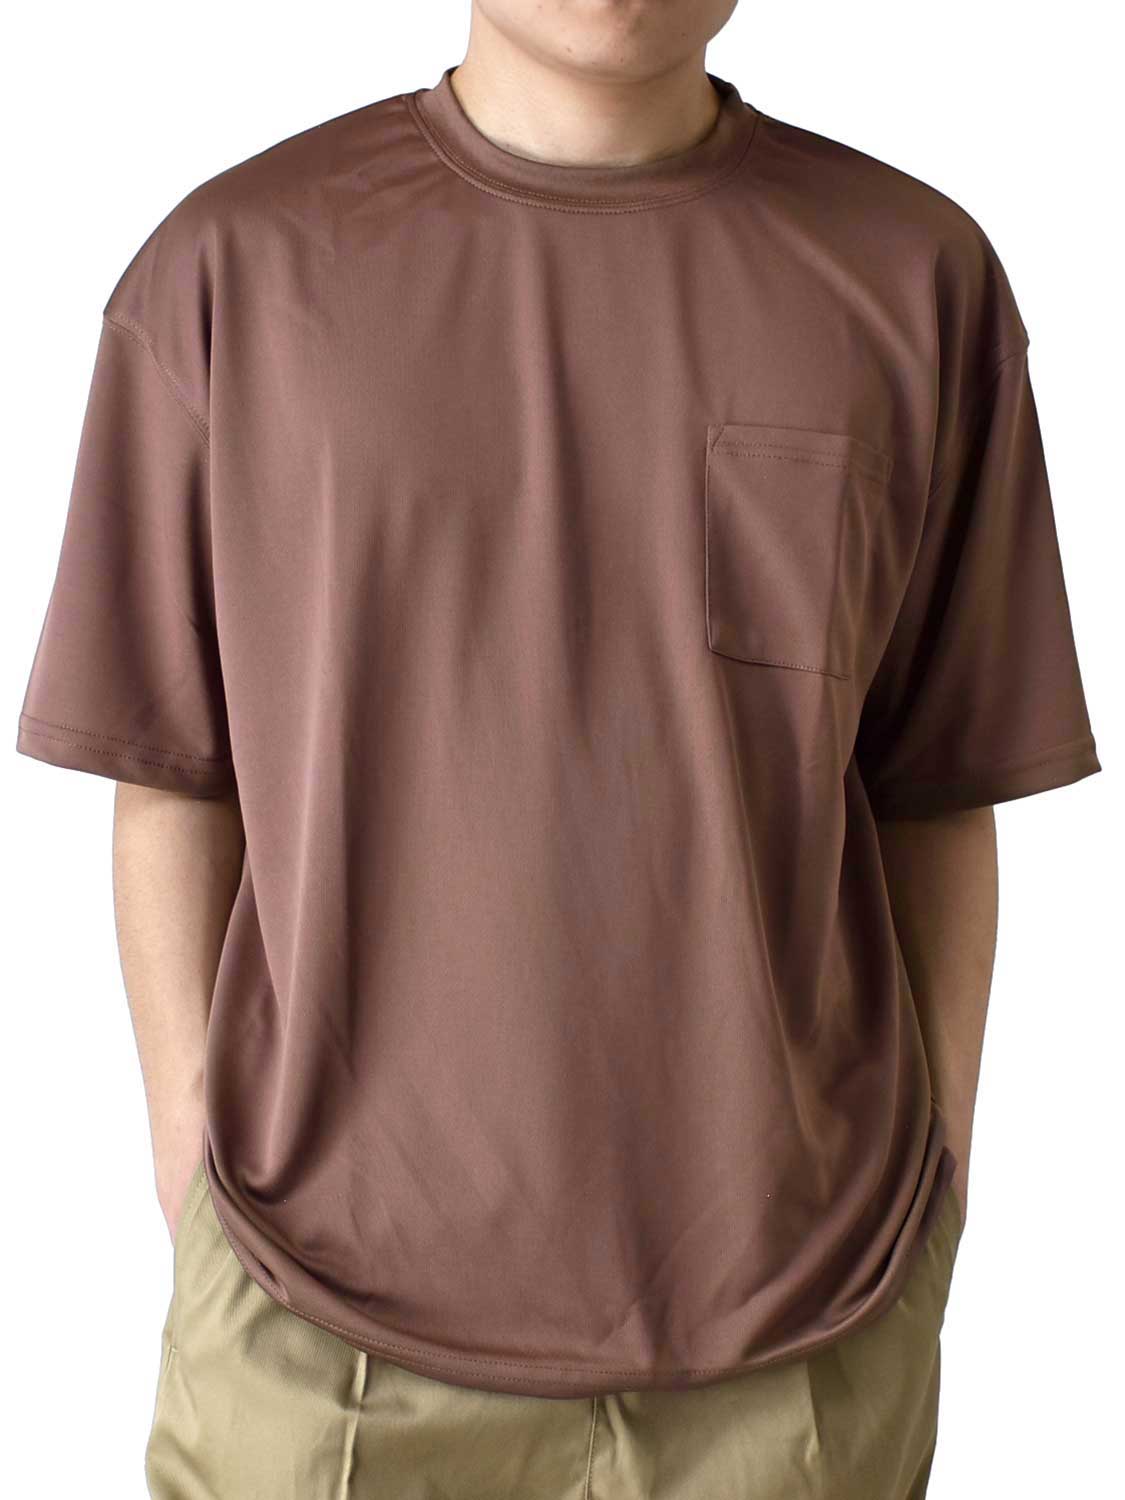 DRYストレッチ Tシャツ メンズ 吸汗速乾 くすみカラー ワイドシルエット ポケット付き 送料無料...